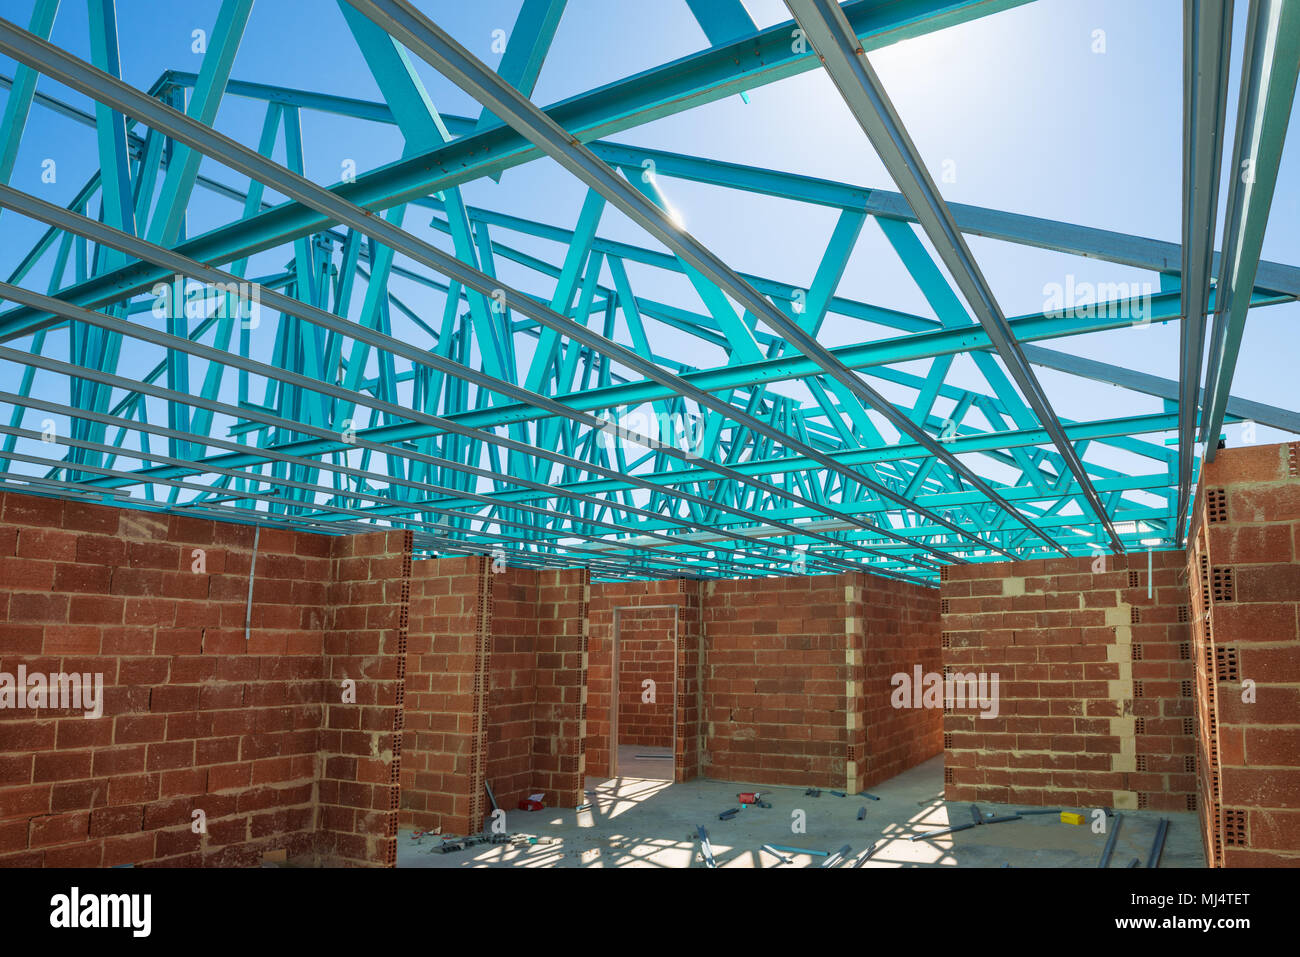 Neuen Wohngebiet brick House Konstruktion mit Dach metal Framing gegen einen blauen sonnigen Himmel. Baustelle innere Ansicht Stockfoto